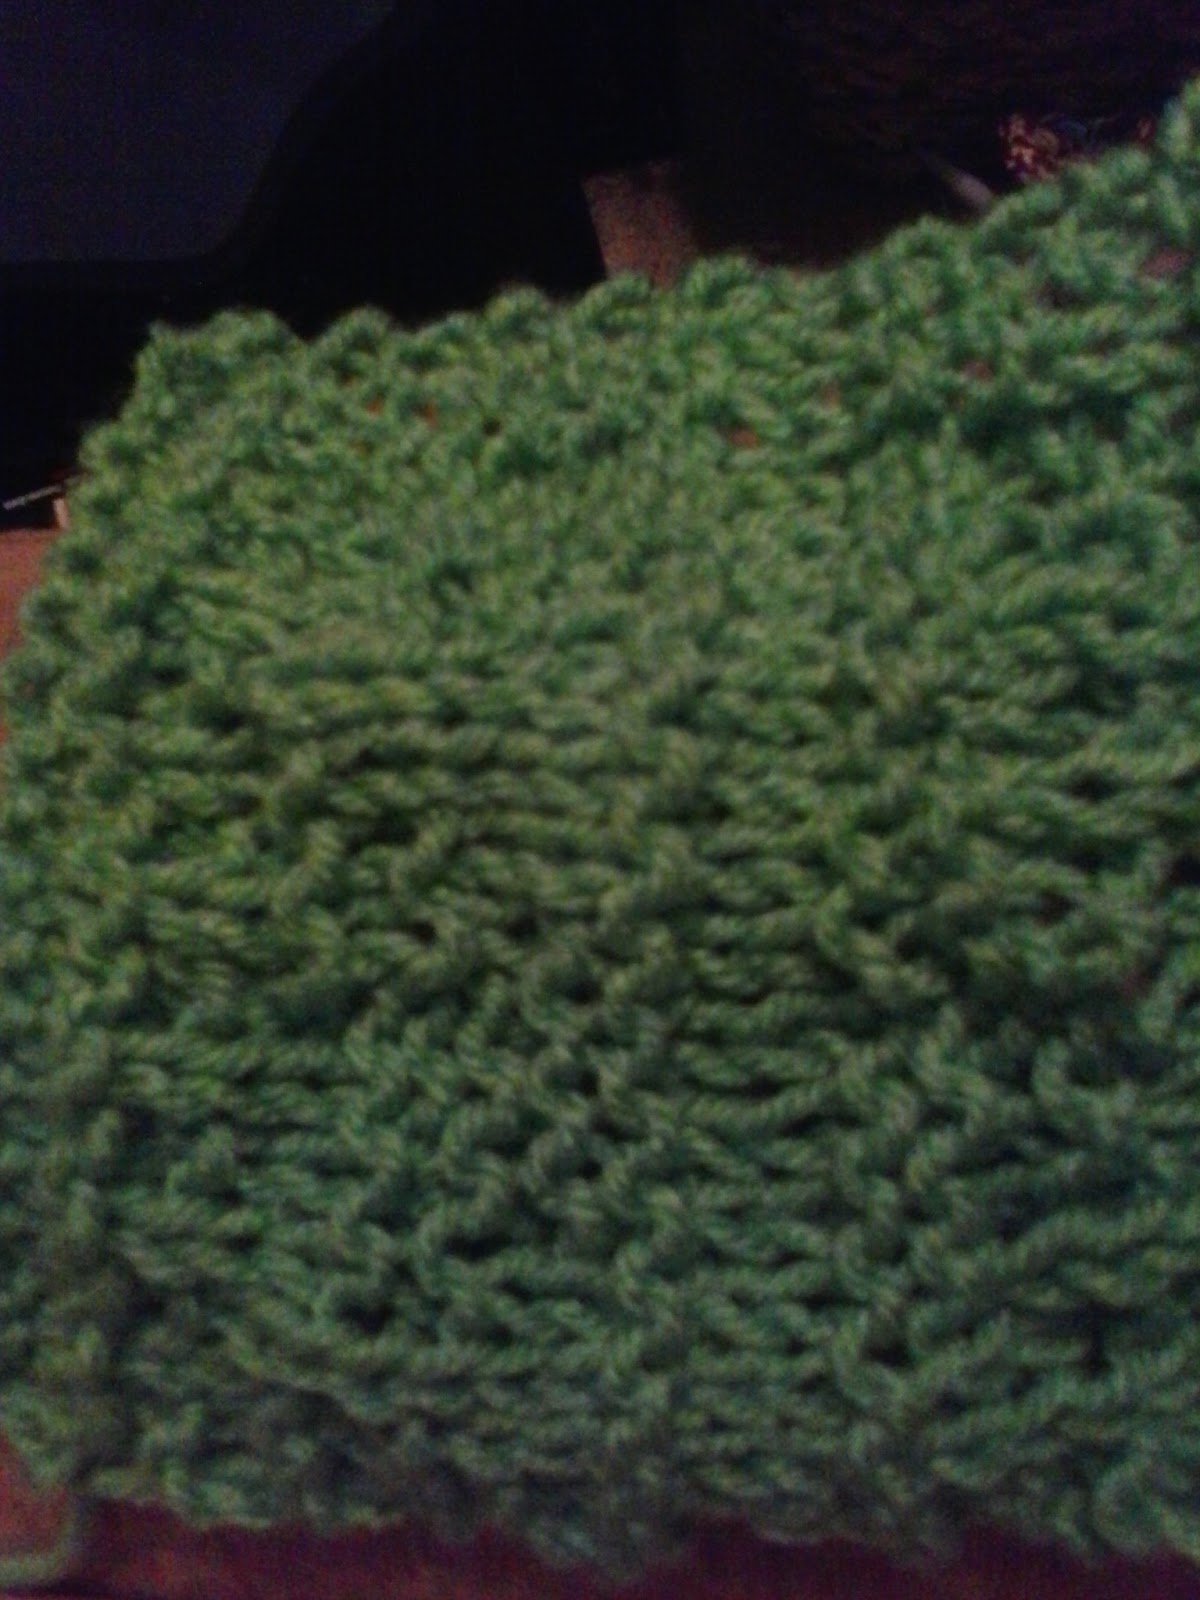 Flirty Knitting: Green Mosh Pit Coaster